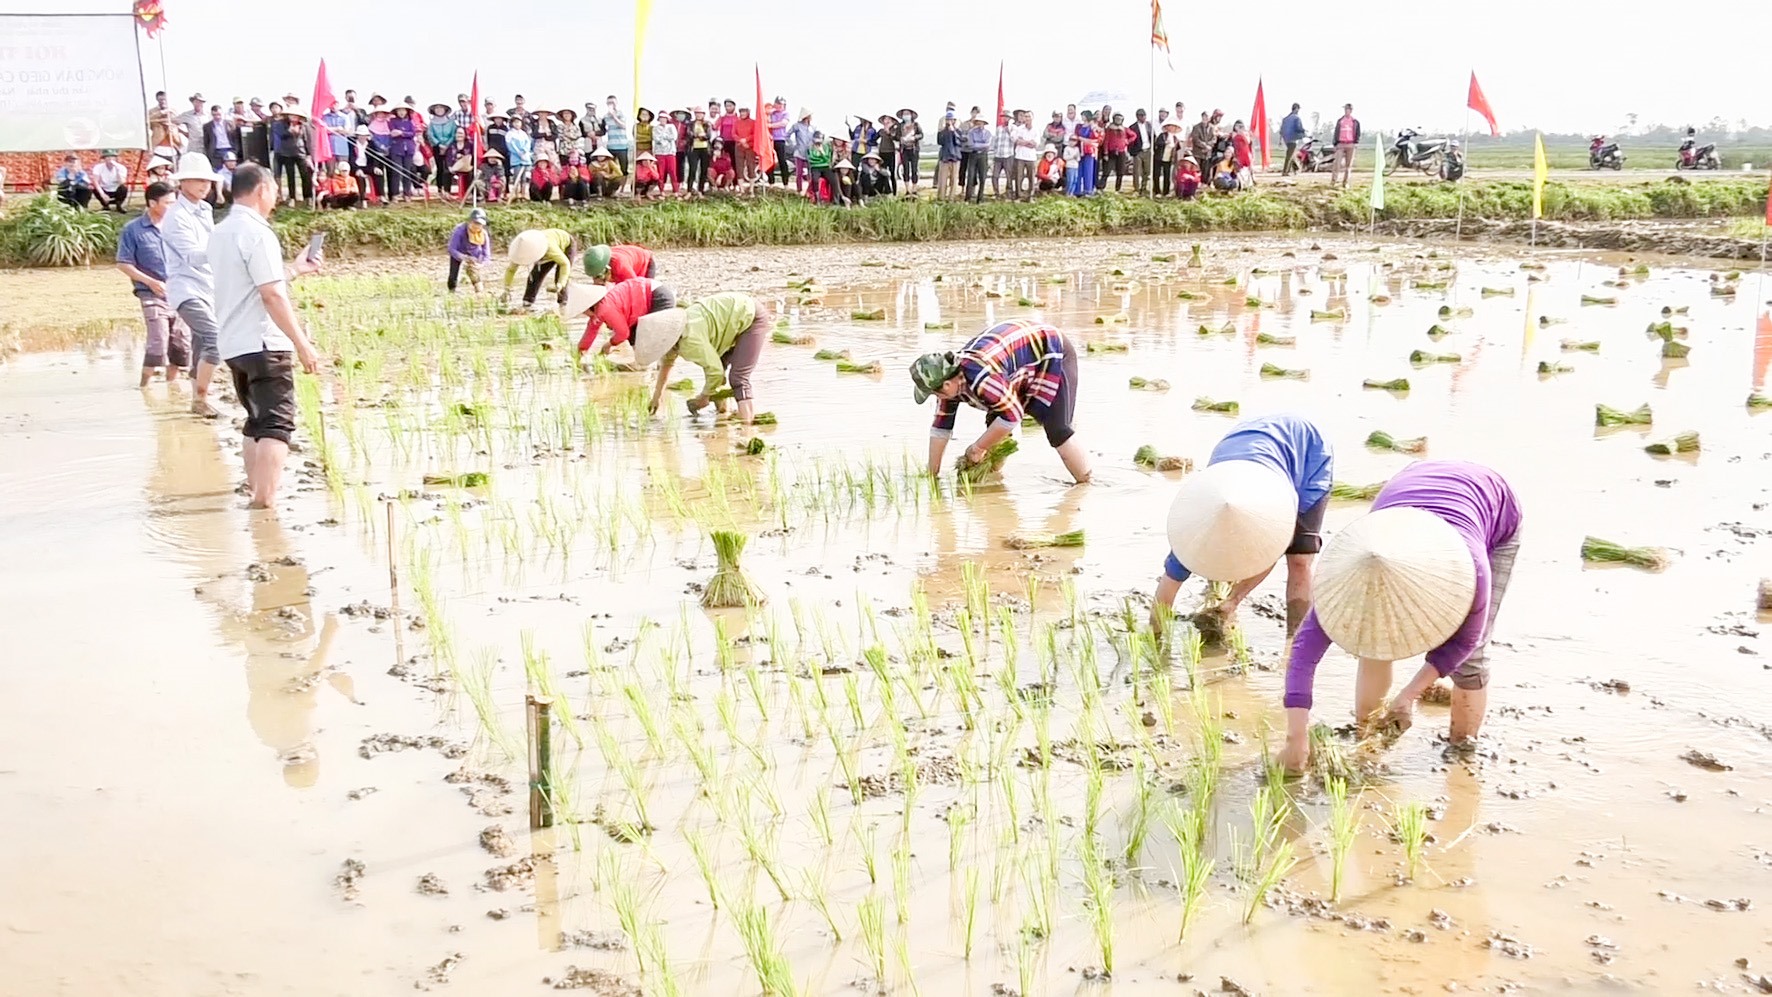 HTX Tân Mỹ tổ chức hội thi cấy lúa chiêm để sản xuất gạo bát đỏ theo hình thức canh tác hoàn toàn tự nhiên - Ảnh: N.T